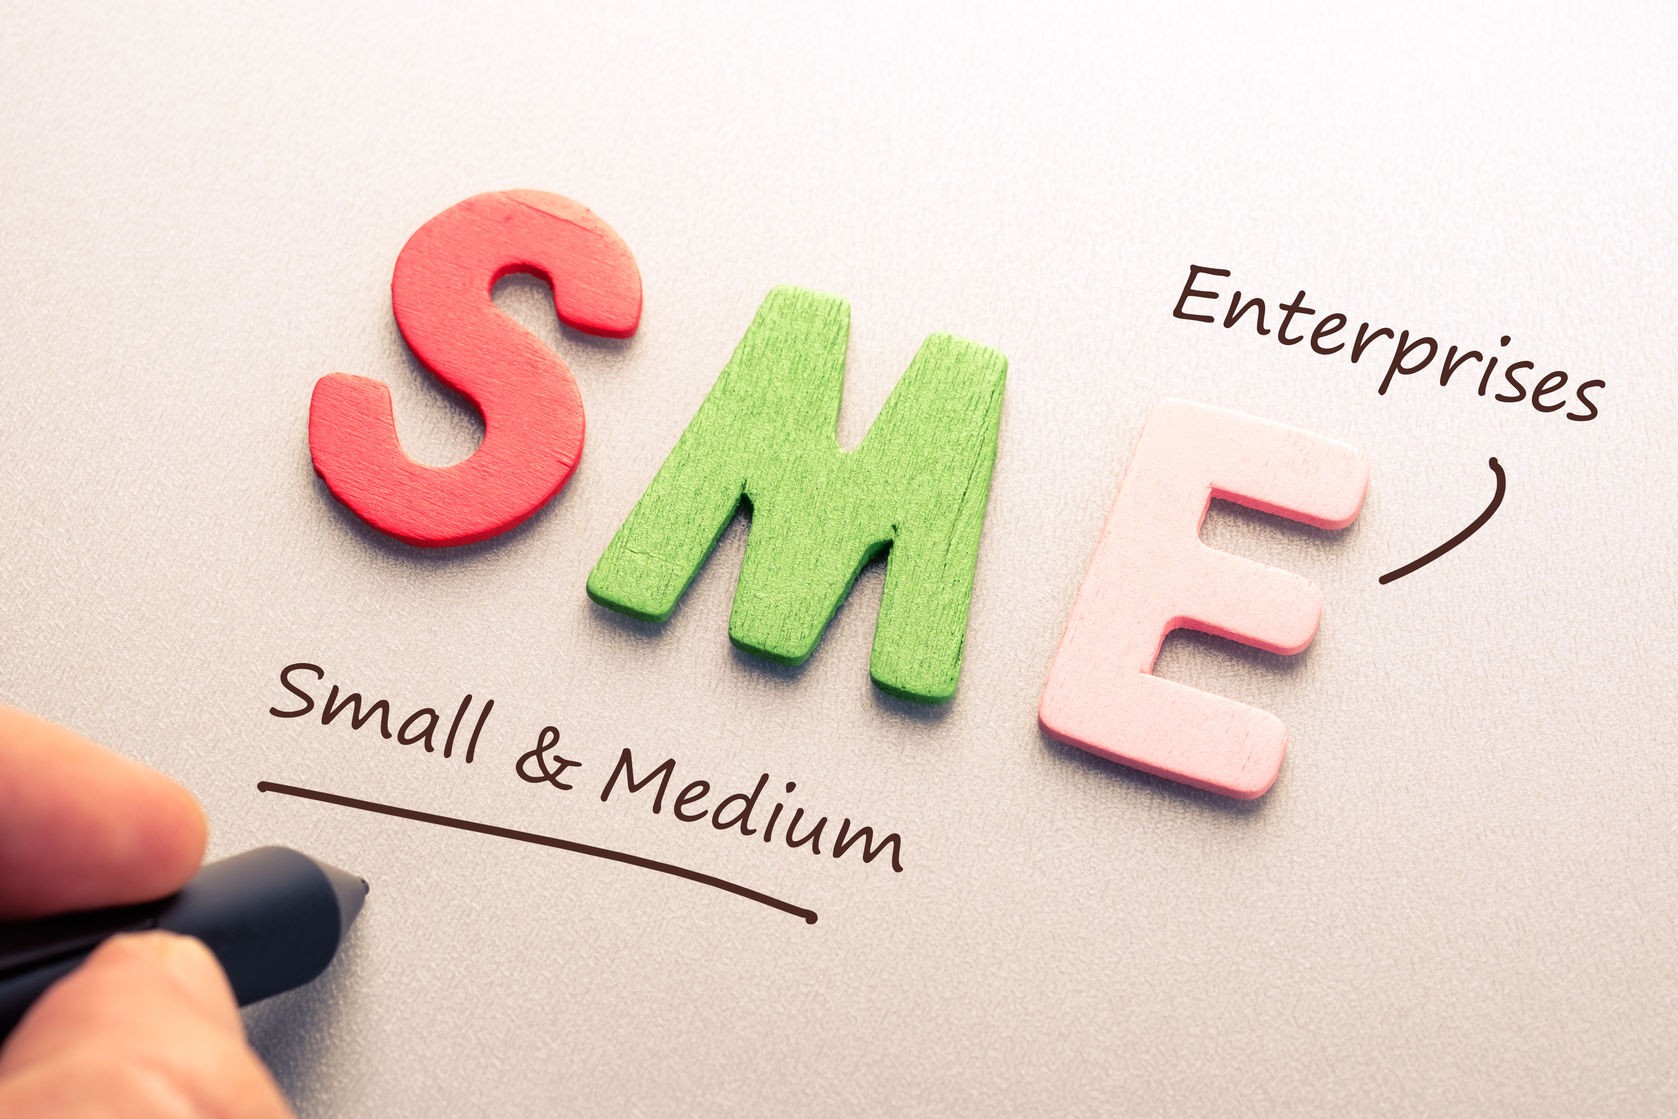 Doanh nghiệp SME là gì? Sự khác nhau với doanh nghiệp Startup như thế nào?